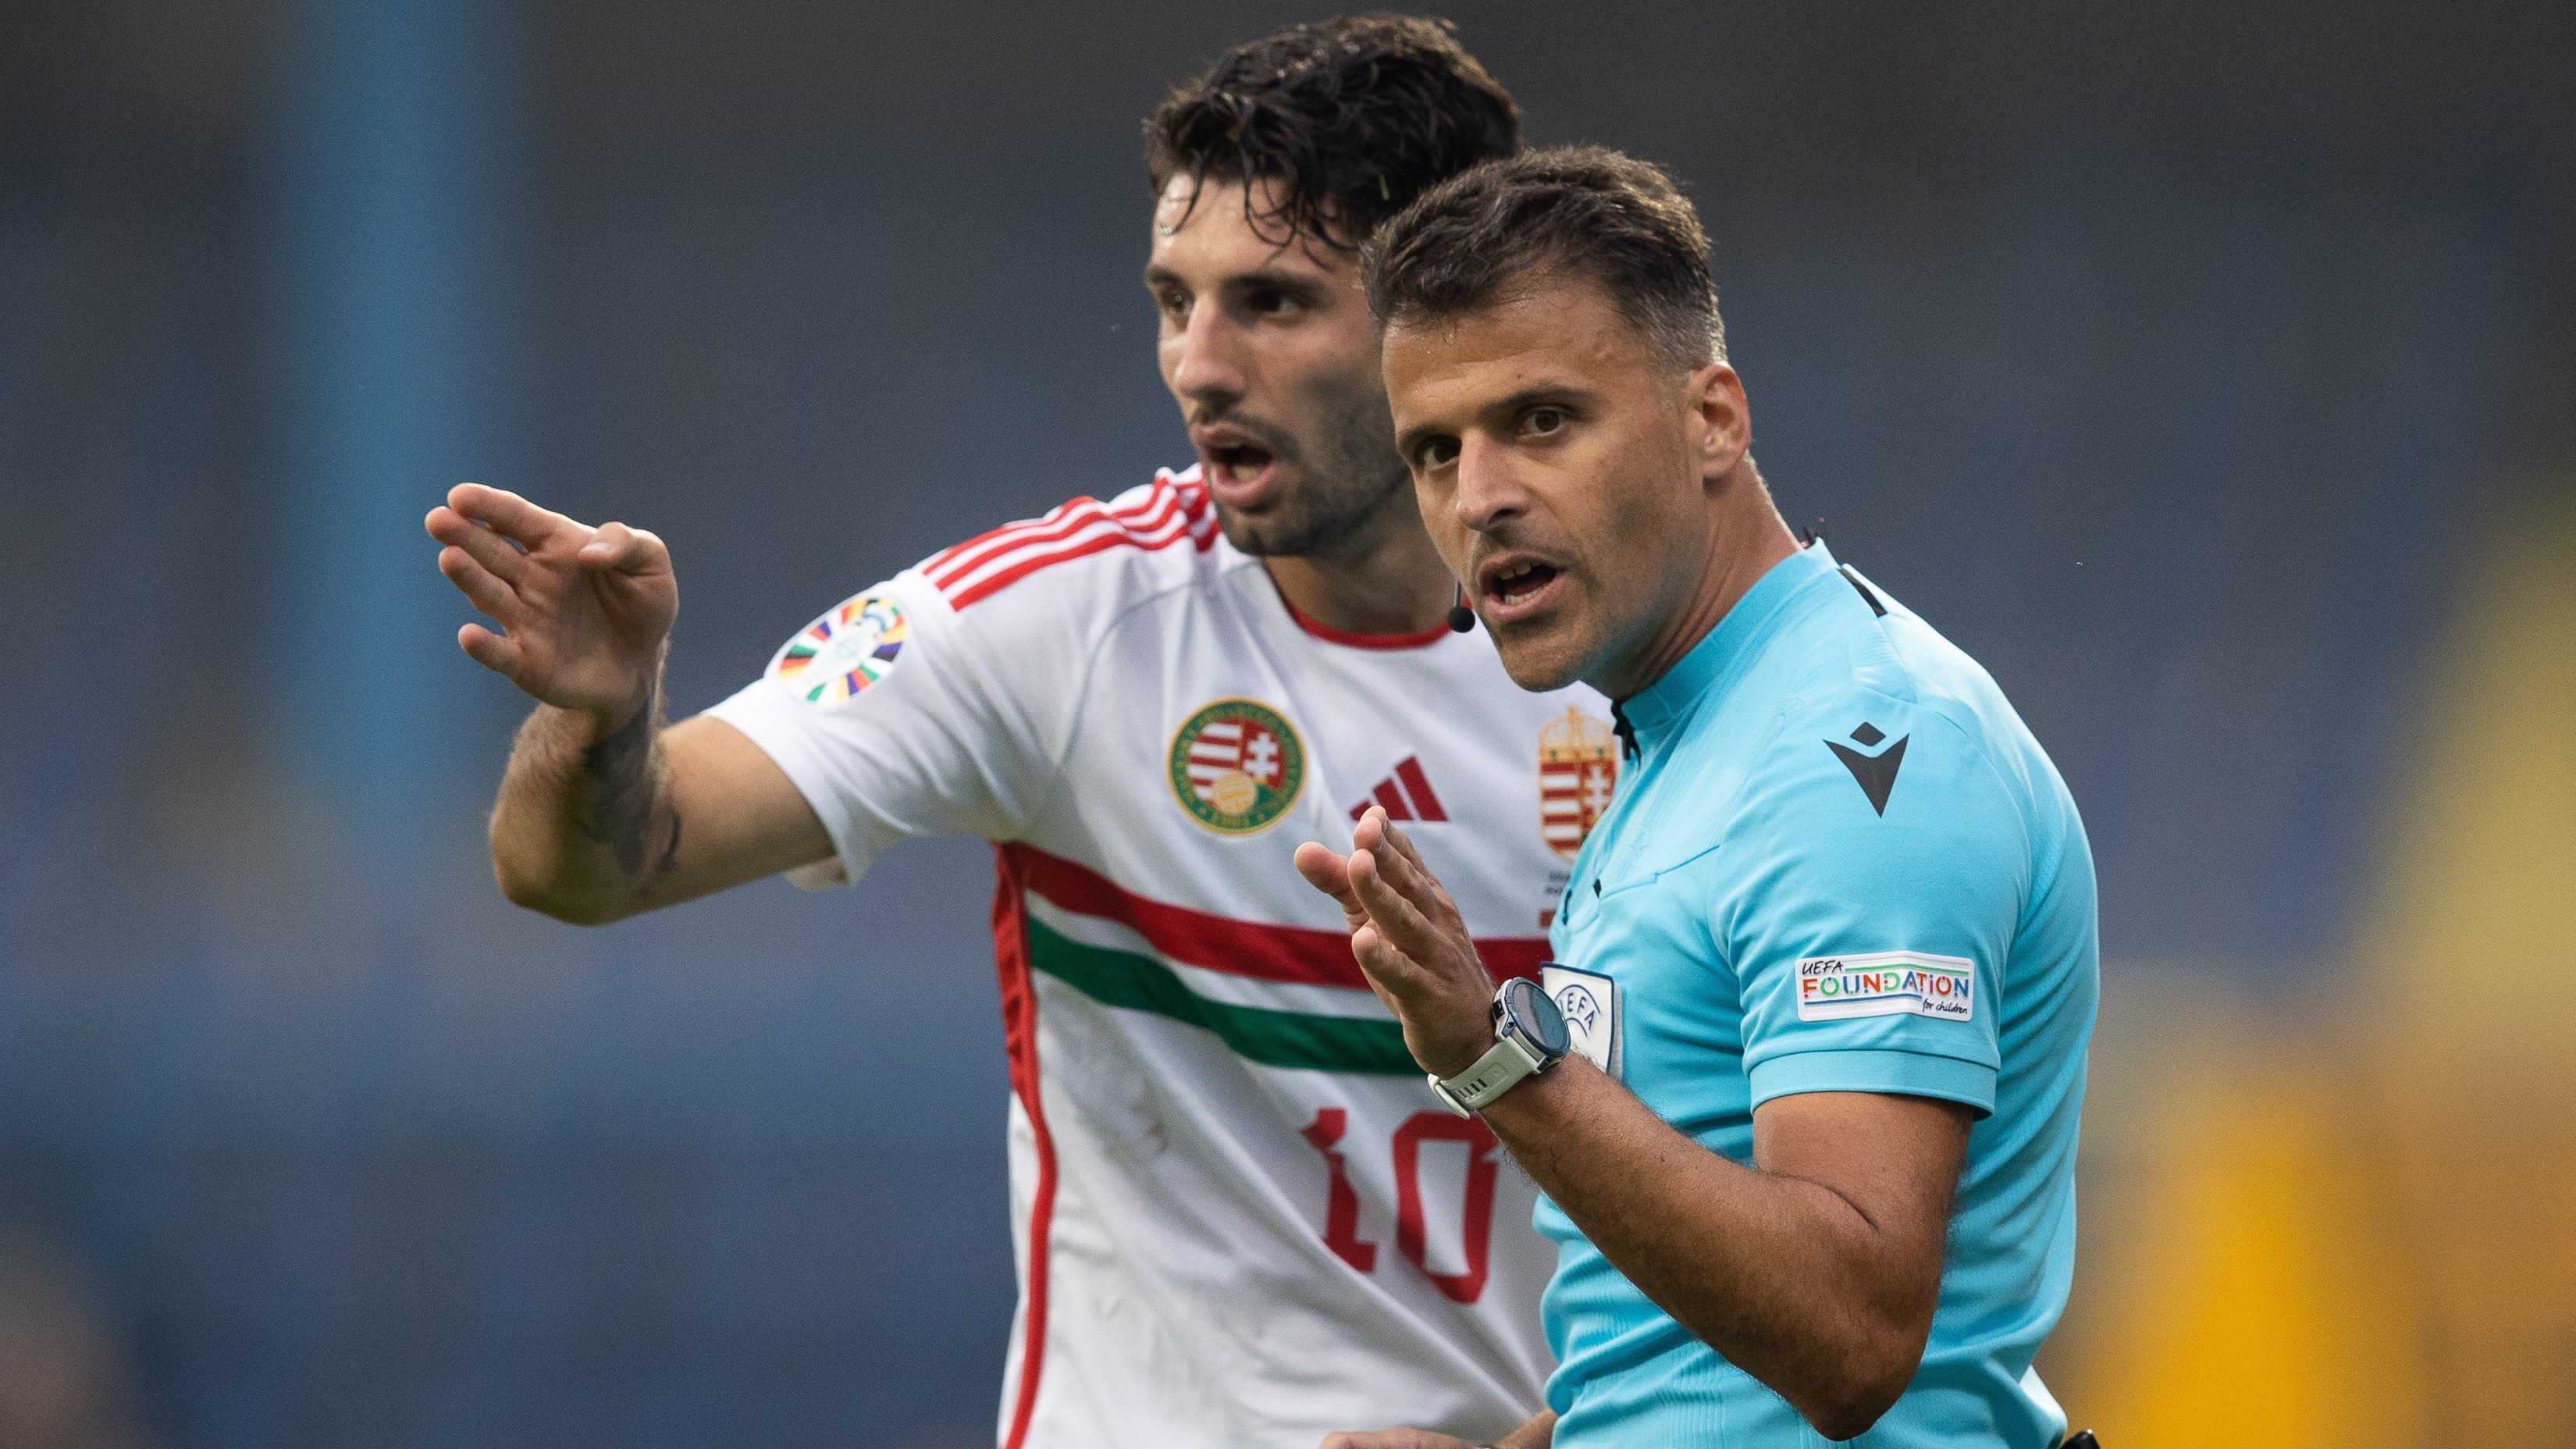 A magyar válogatott csapatkapitánya, Szoboszlai Dominik örült neki, hogy a nemzeti csapat újabb meccset hozott le kapott gól nélkül. Fotó: Zsolnai Péter